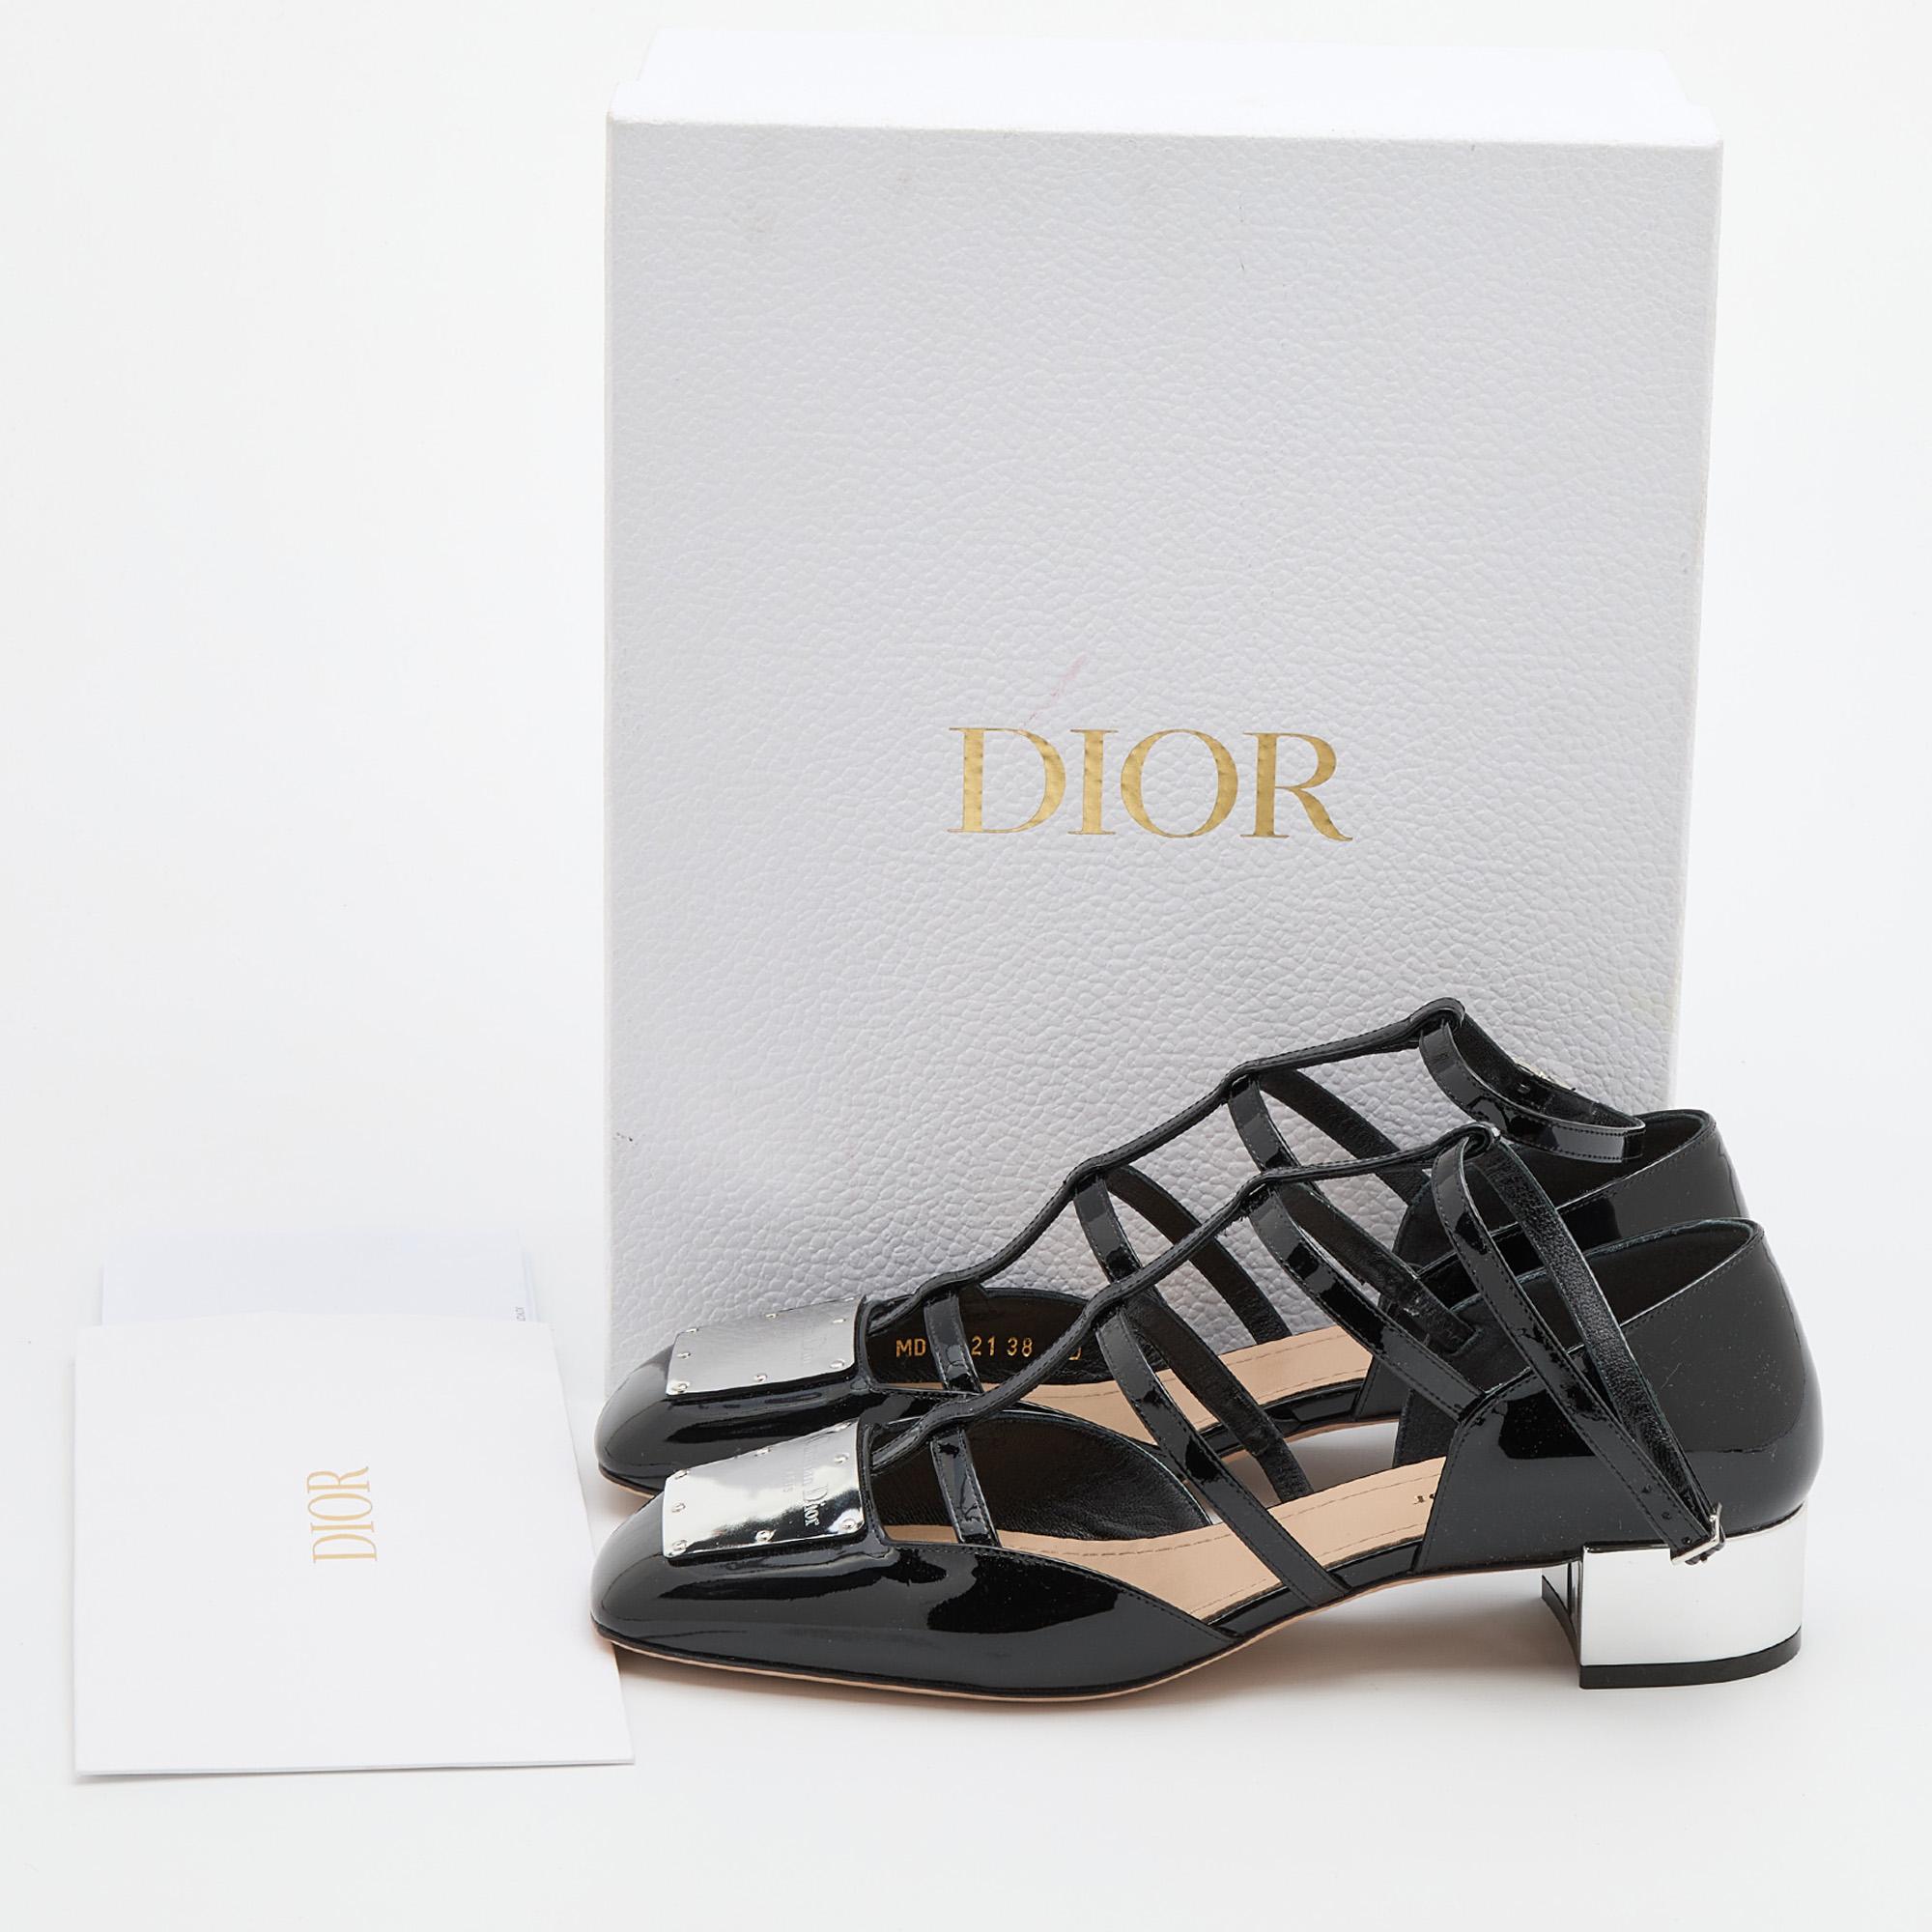 Dior Black Patent Leather La Parisienne Caged Pumps Size 38 2